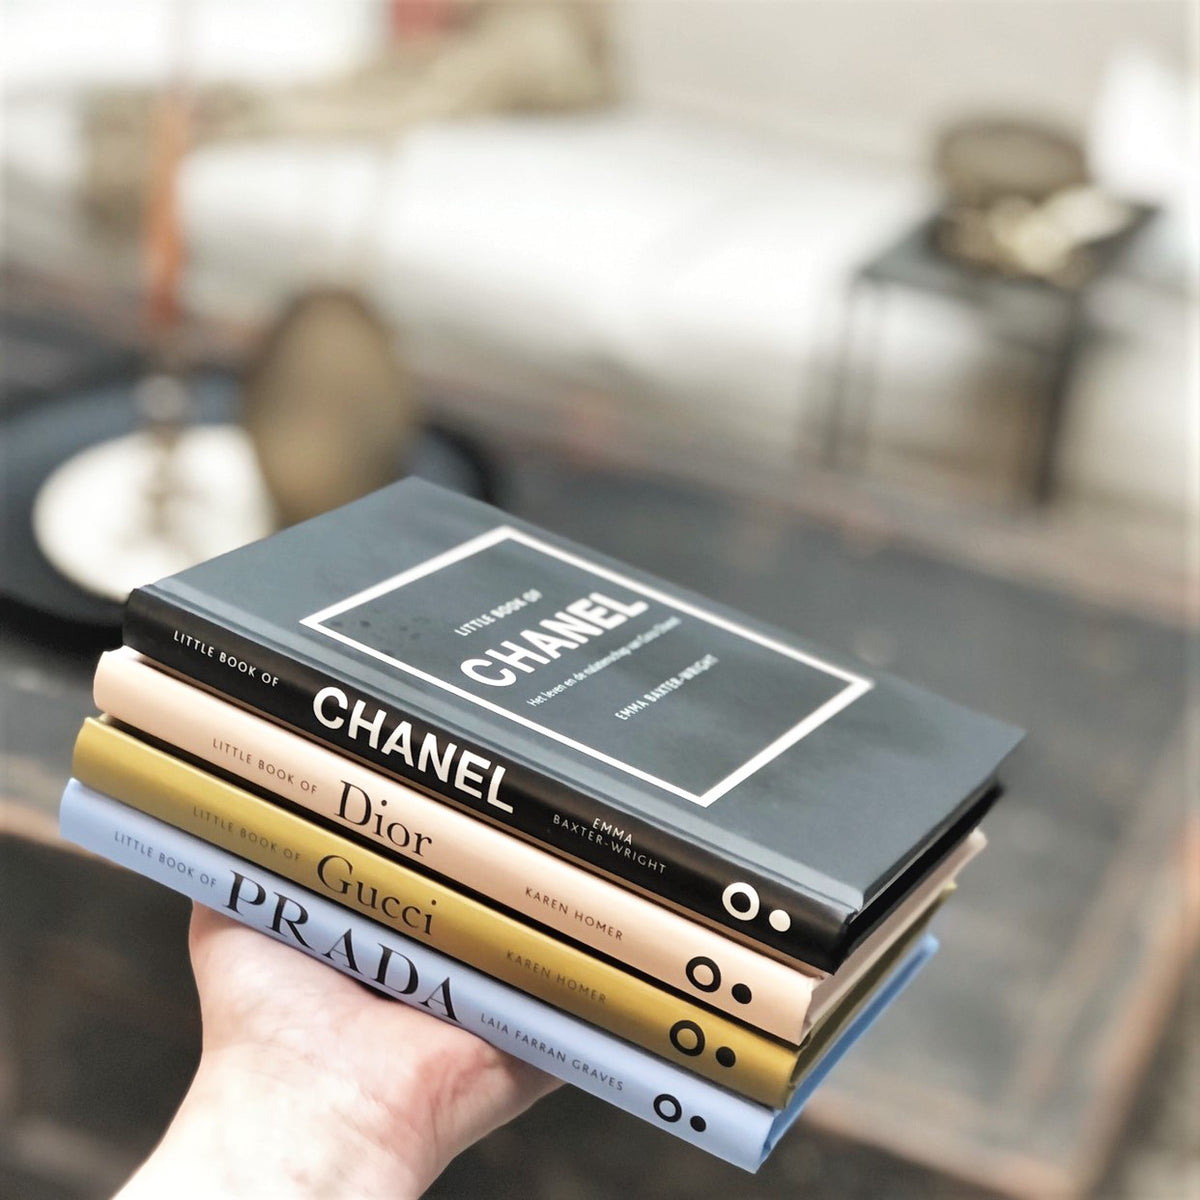 Little book of.. Chanel - Prada - Dior - Gucci — 4Suze